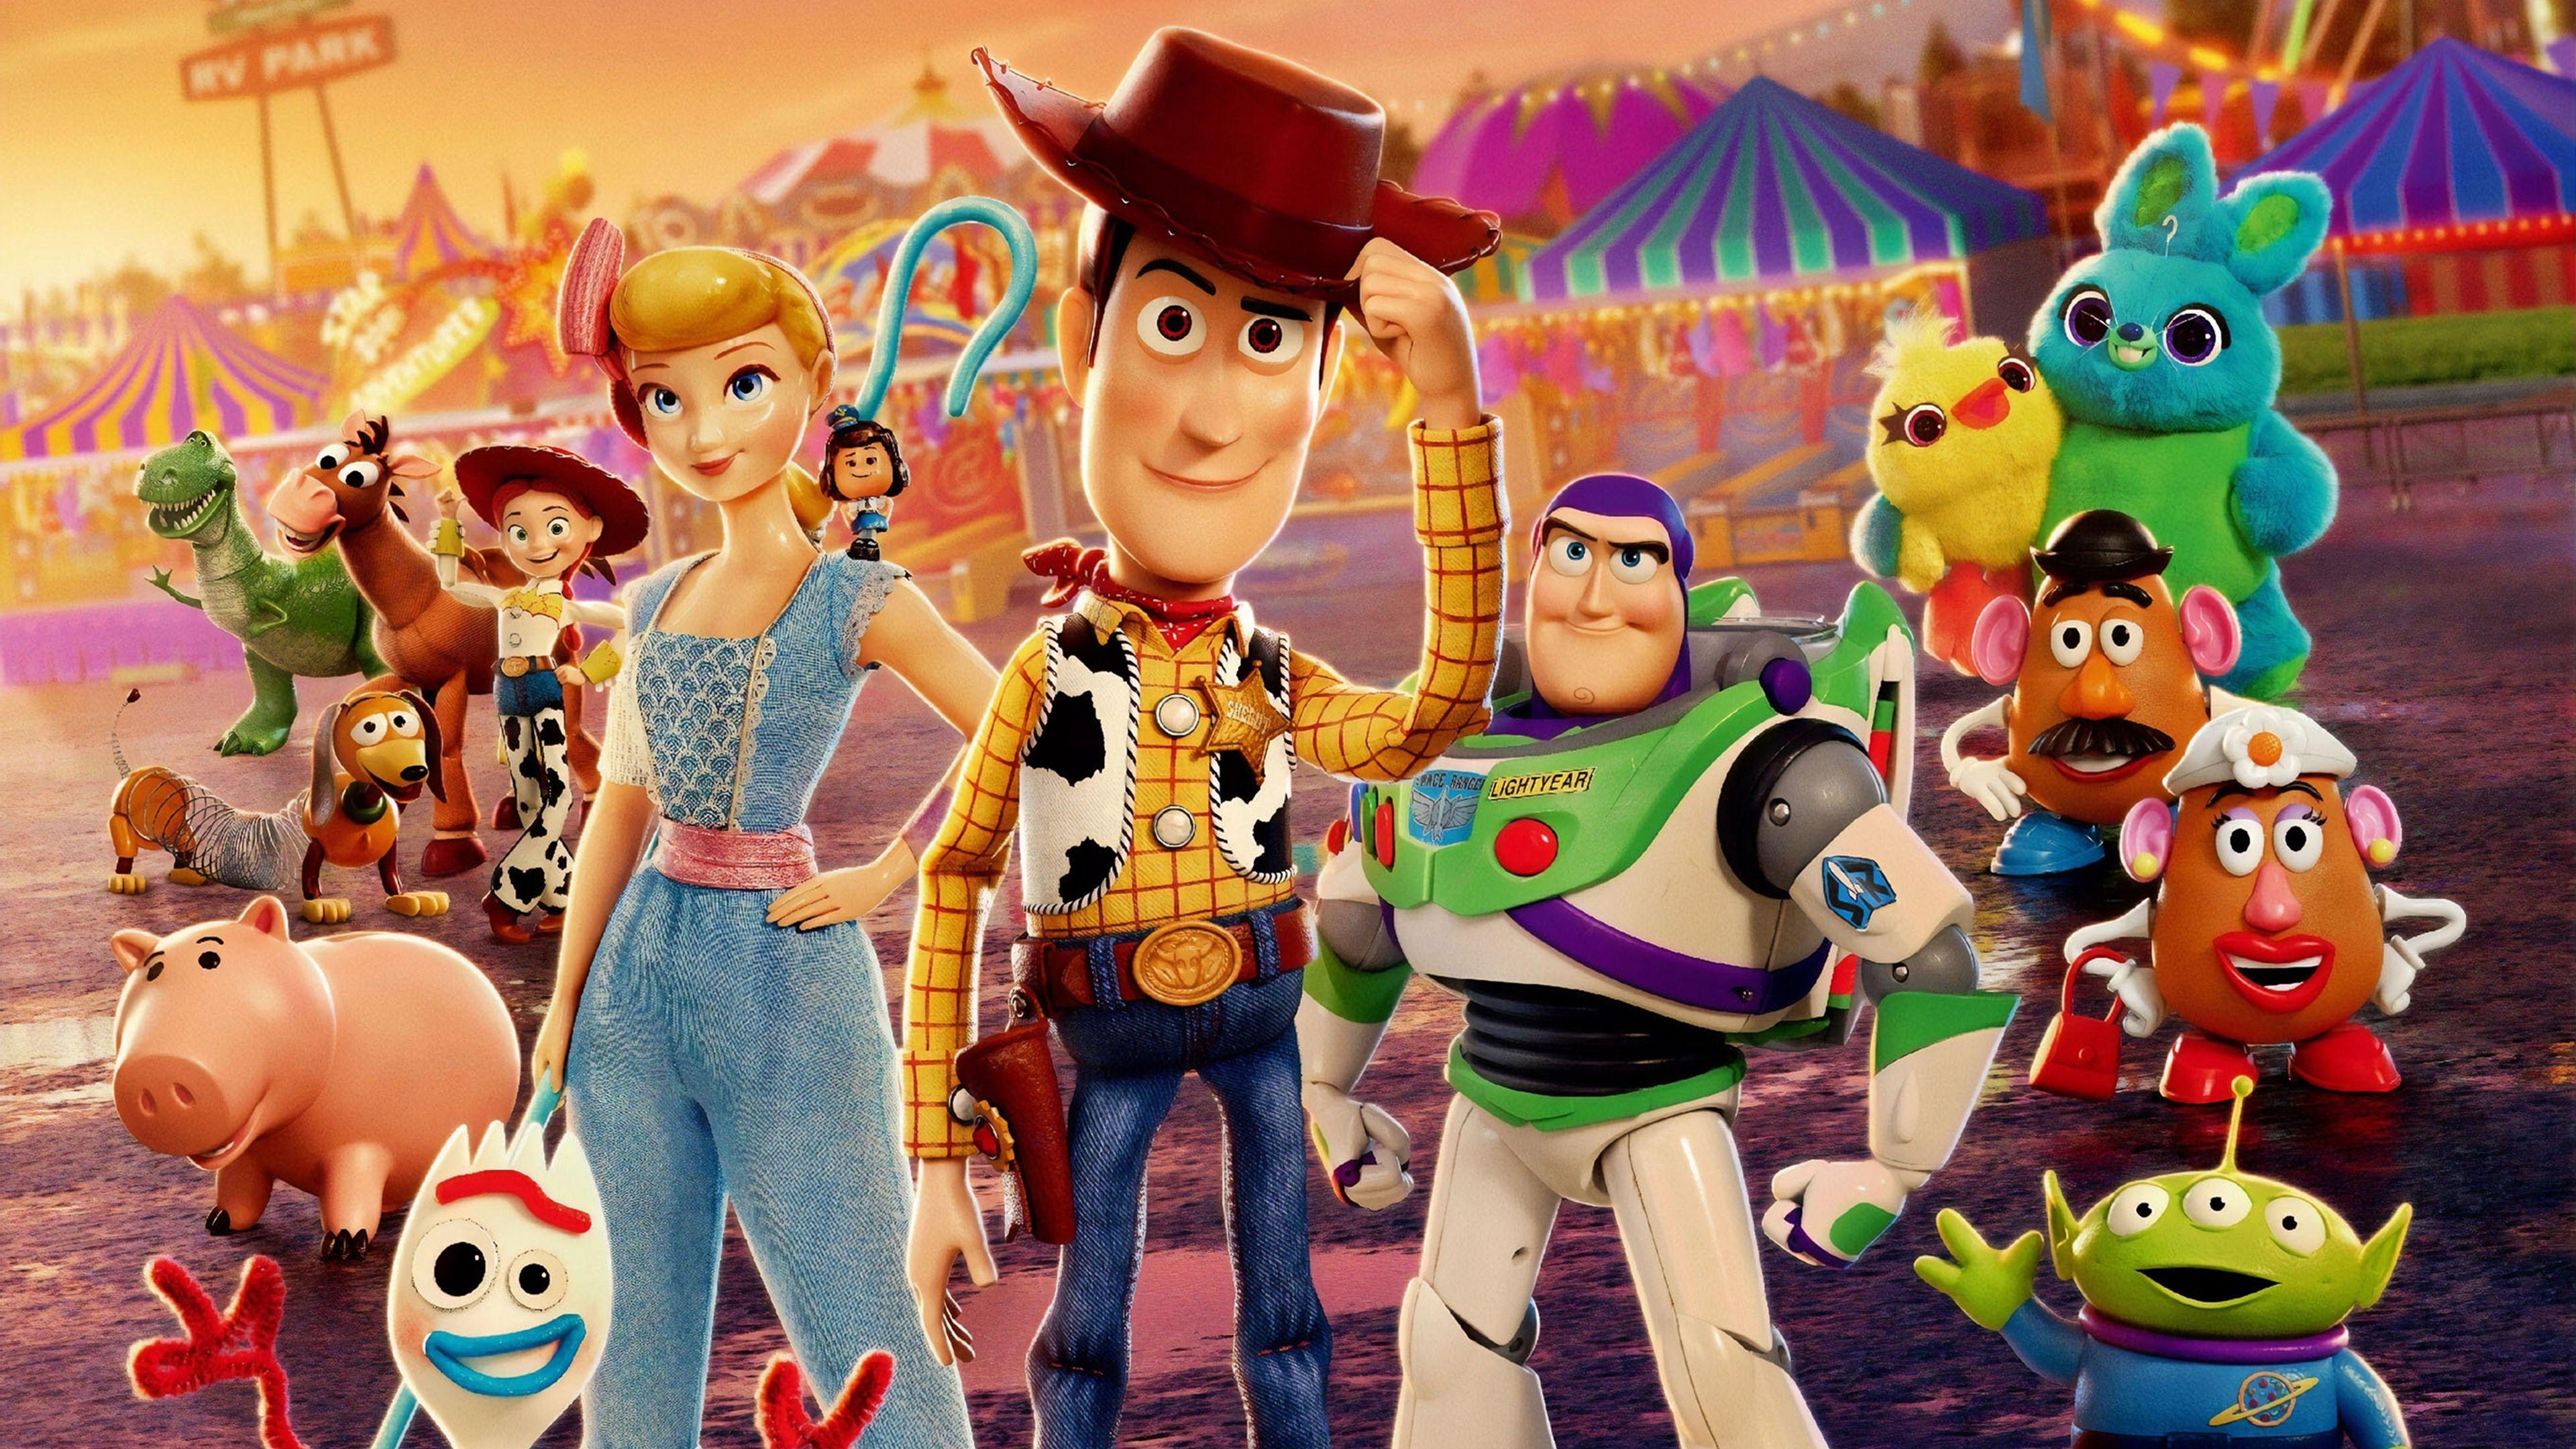 Toy Story 4 Buzz Lightyear Wallpaper 4k Ultra HD ID:3324